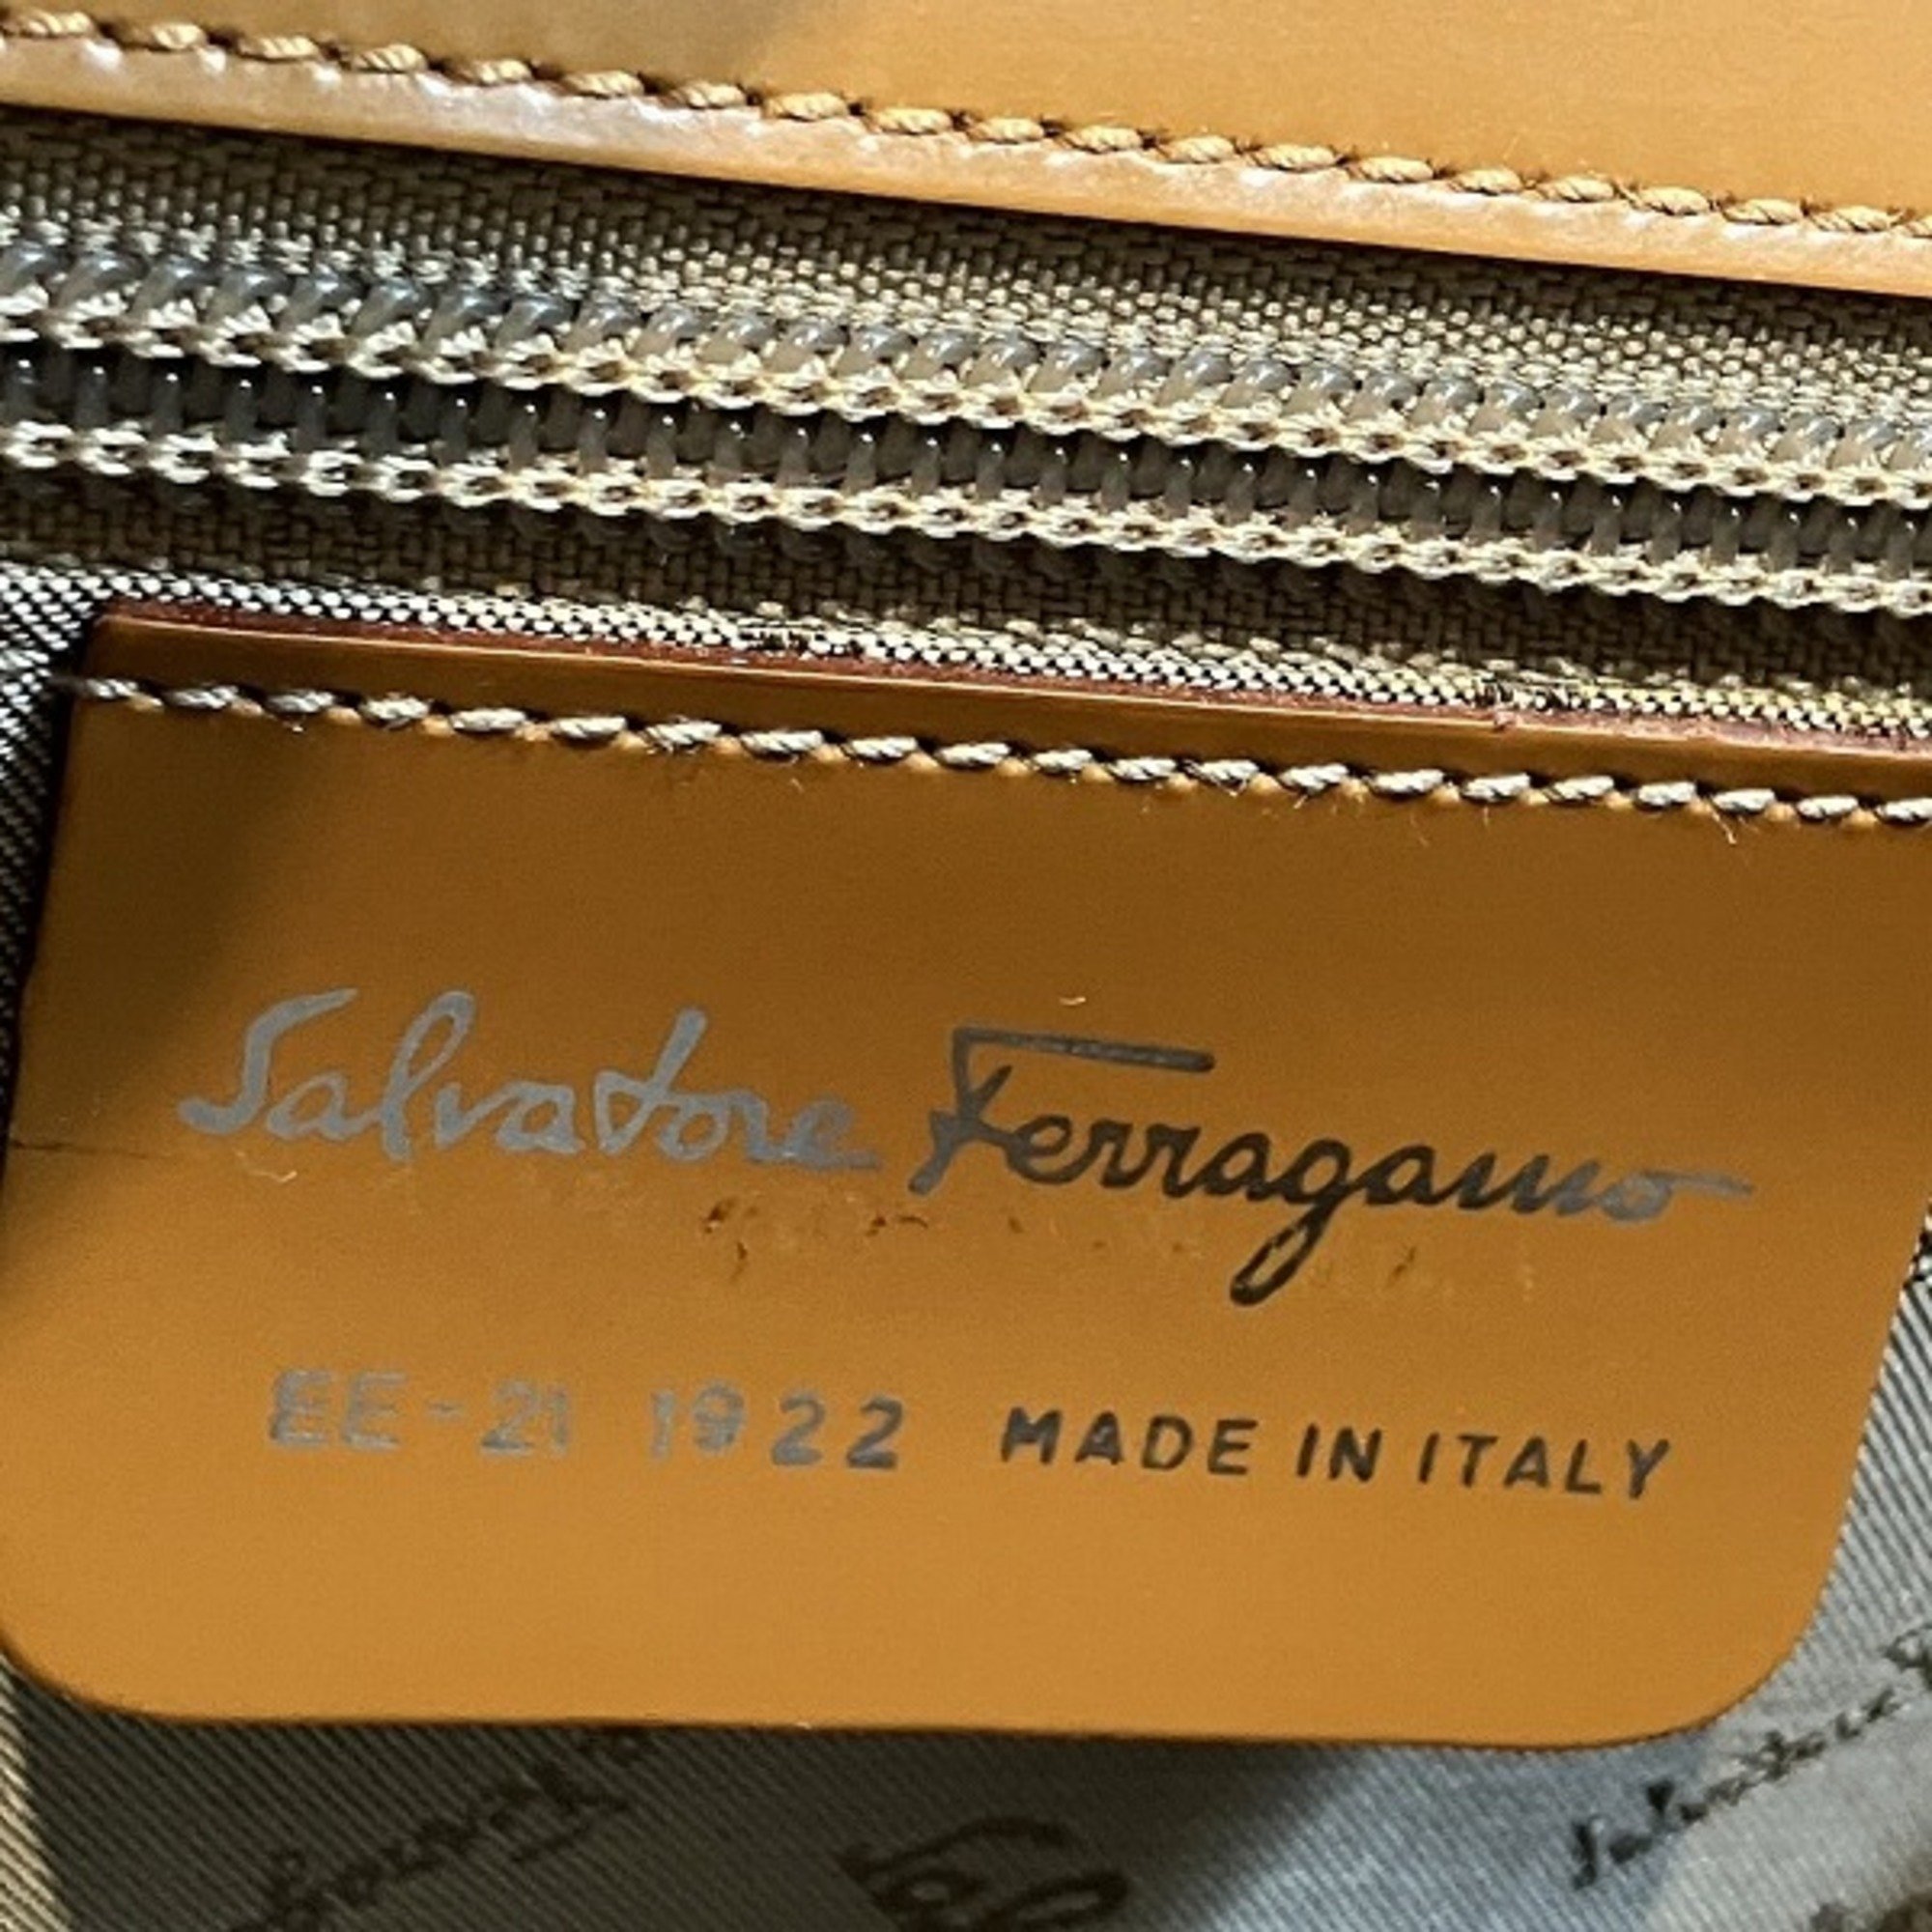 Salvatore Ferragamo Ferragamo Vara EE-21 1922 Bag Shoulder Handbag Ladies